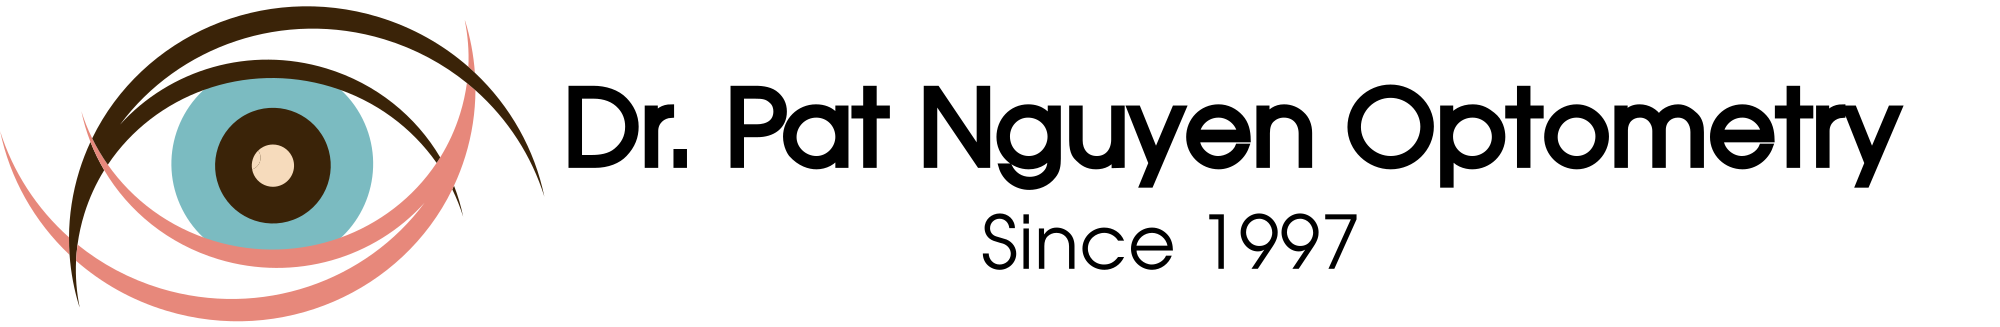 drpatnguyen-logo